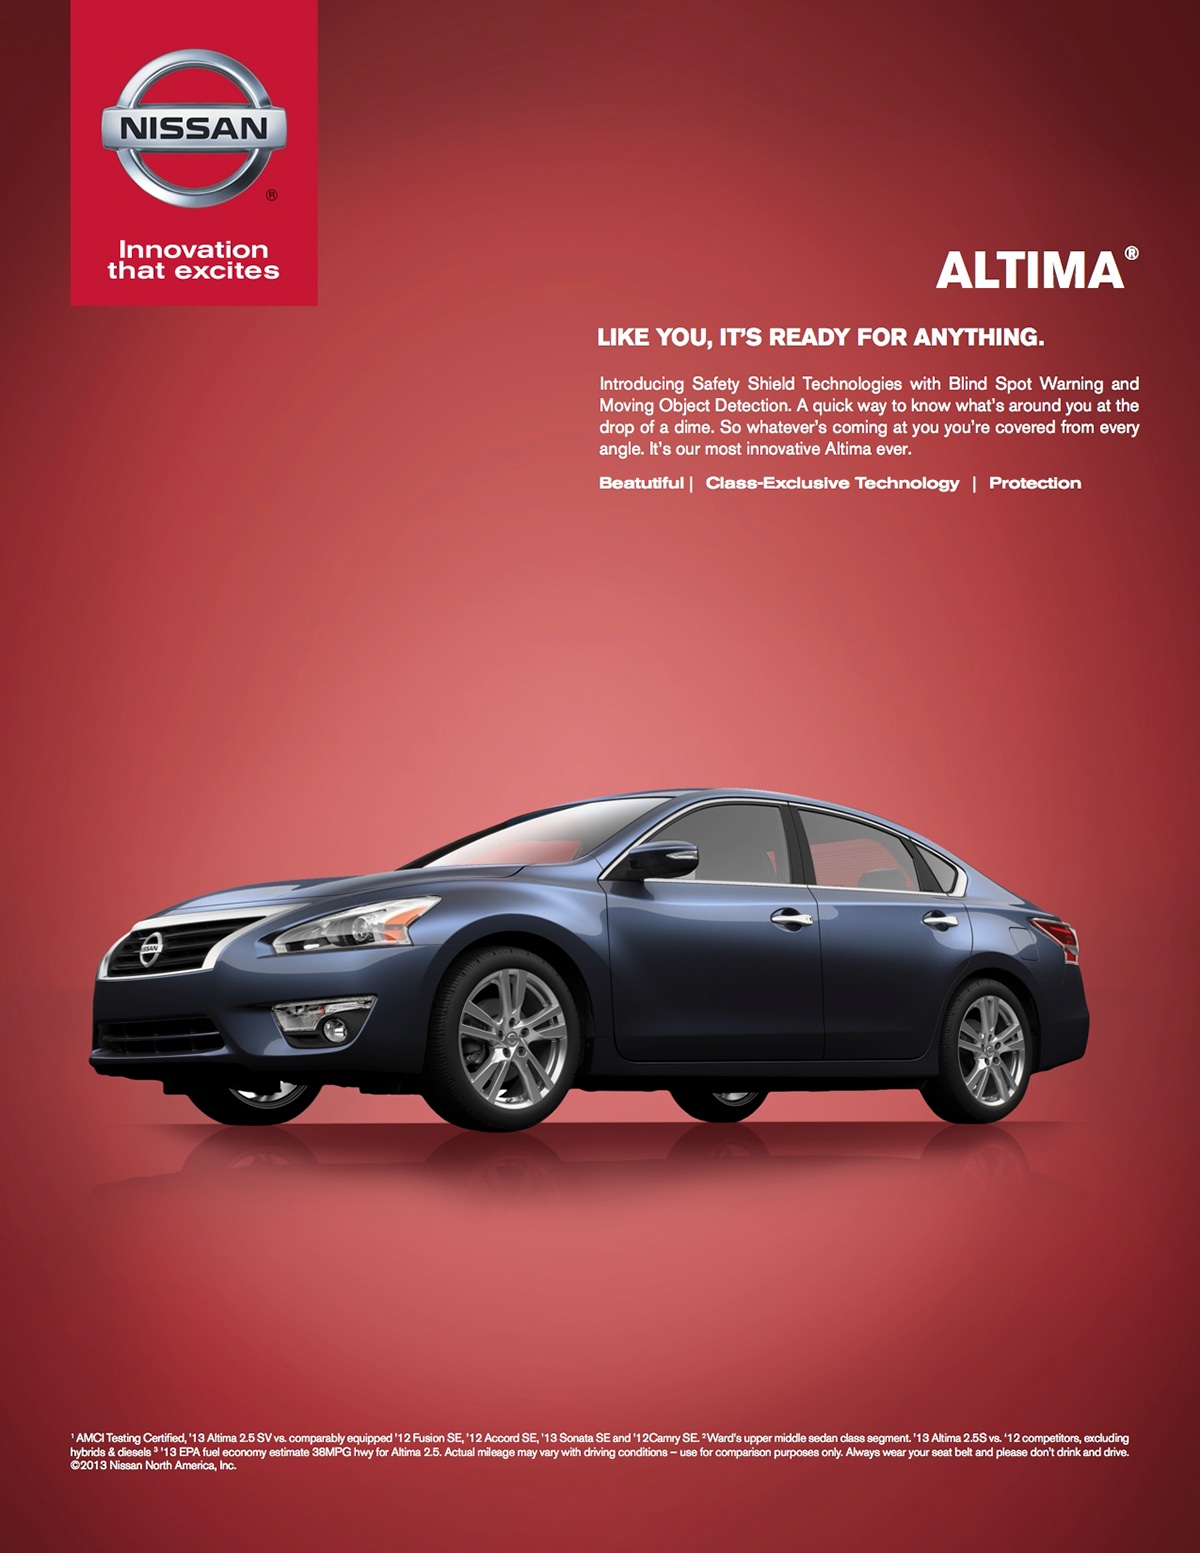 Magazine Ad Image manipulation Nissan magazine Cars Layout